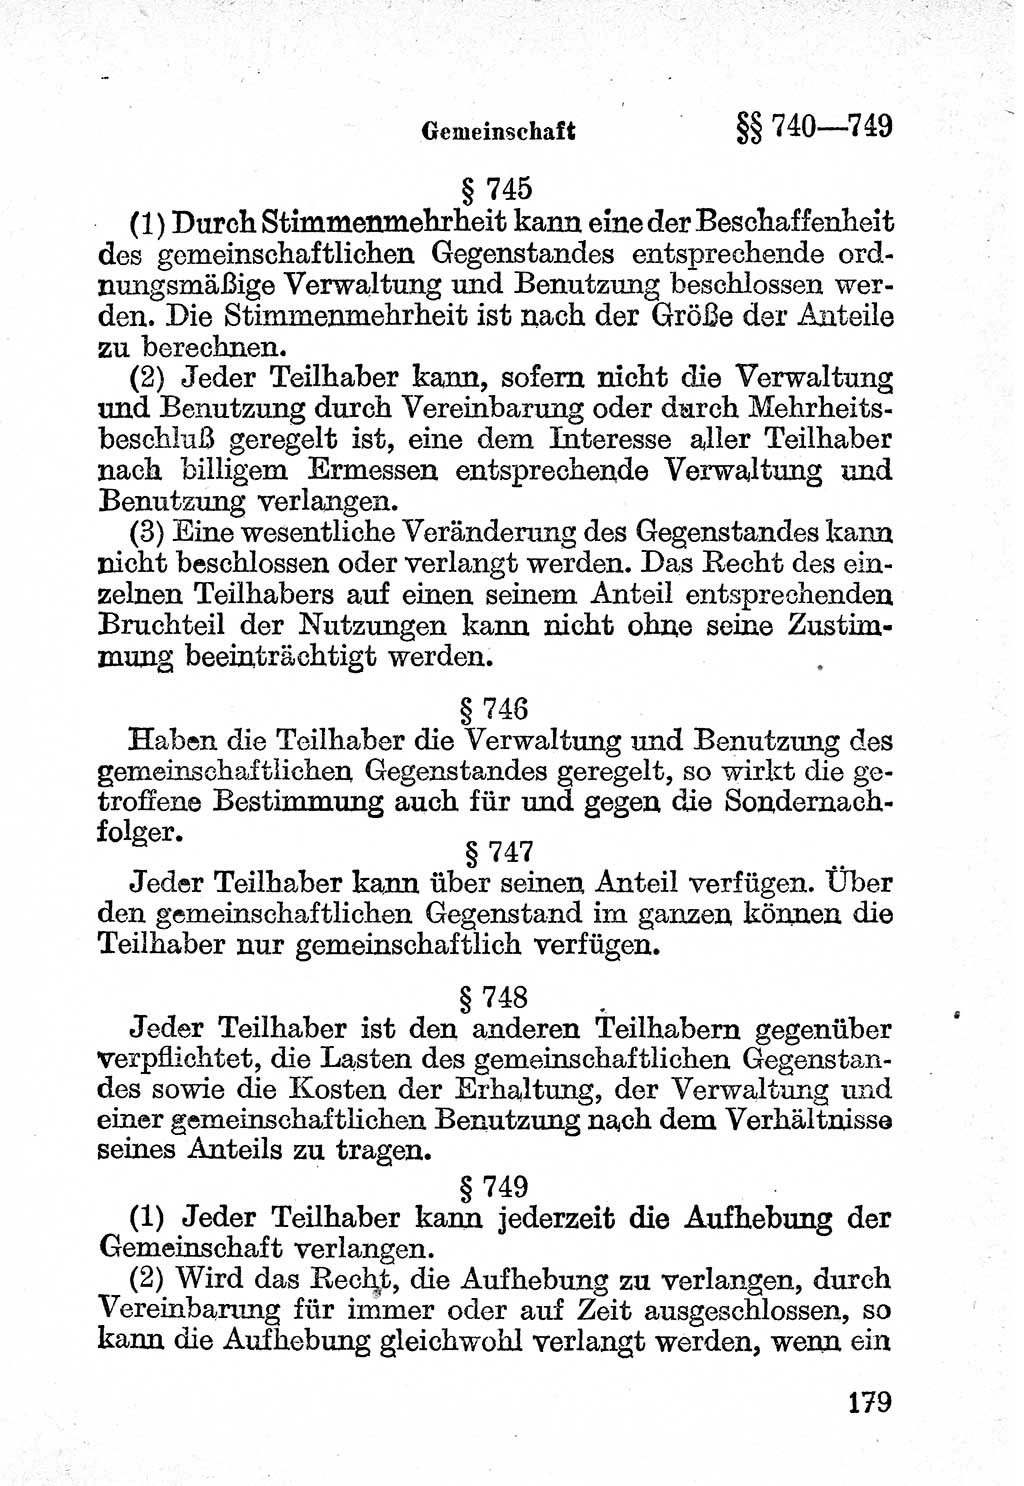 Bürgerliches Gesetzbuch (BGB) nebst wichtigen Nebengesetzen [Deutsche Demokratische Republik (DDR)] 1956, Seite 179 (BGB Nebenges. DDR 1956, S. 179)